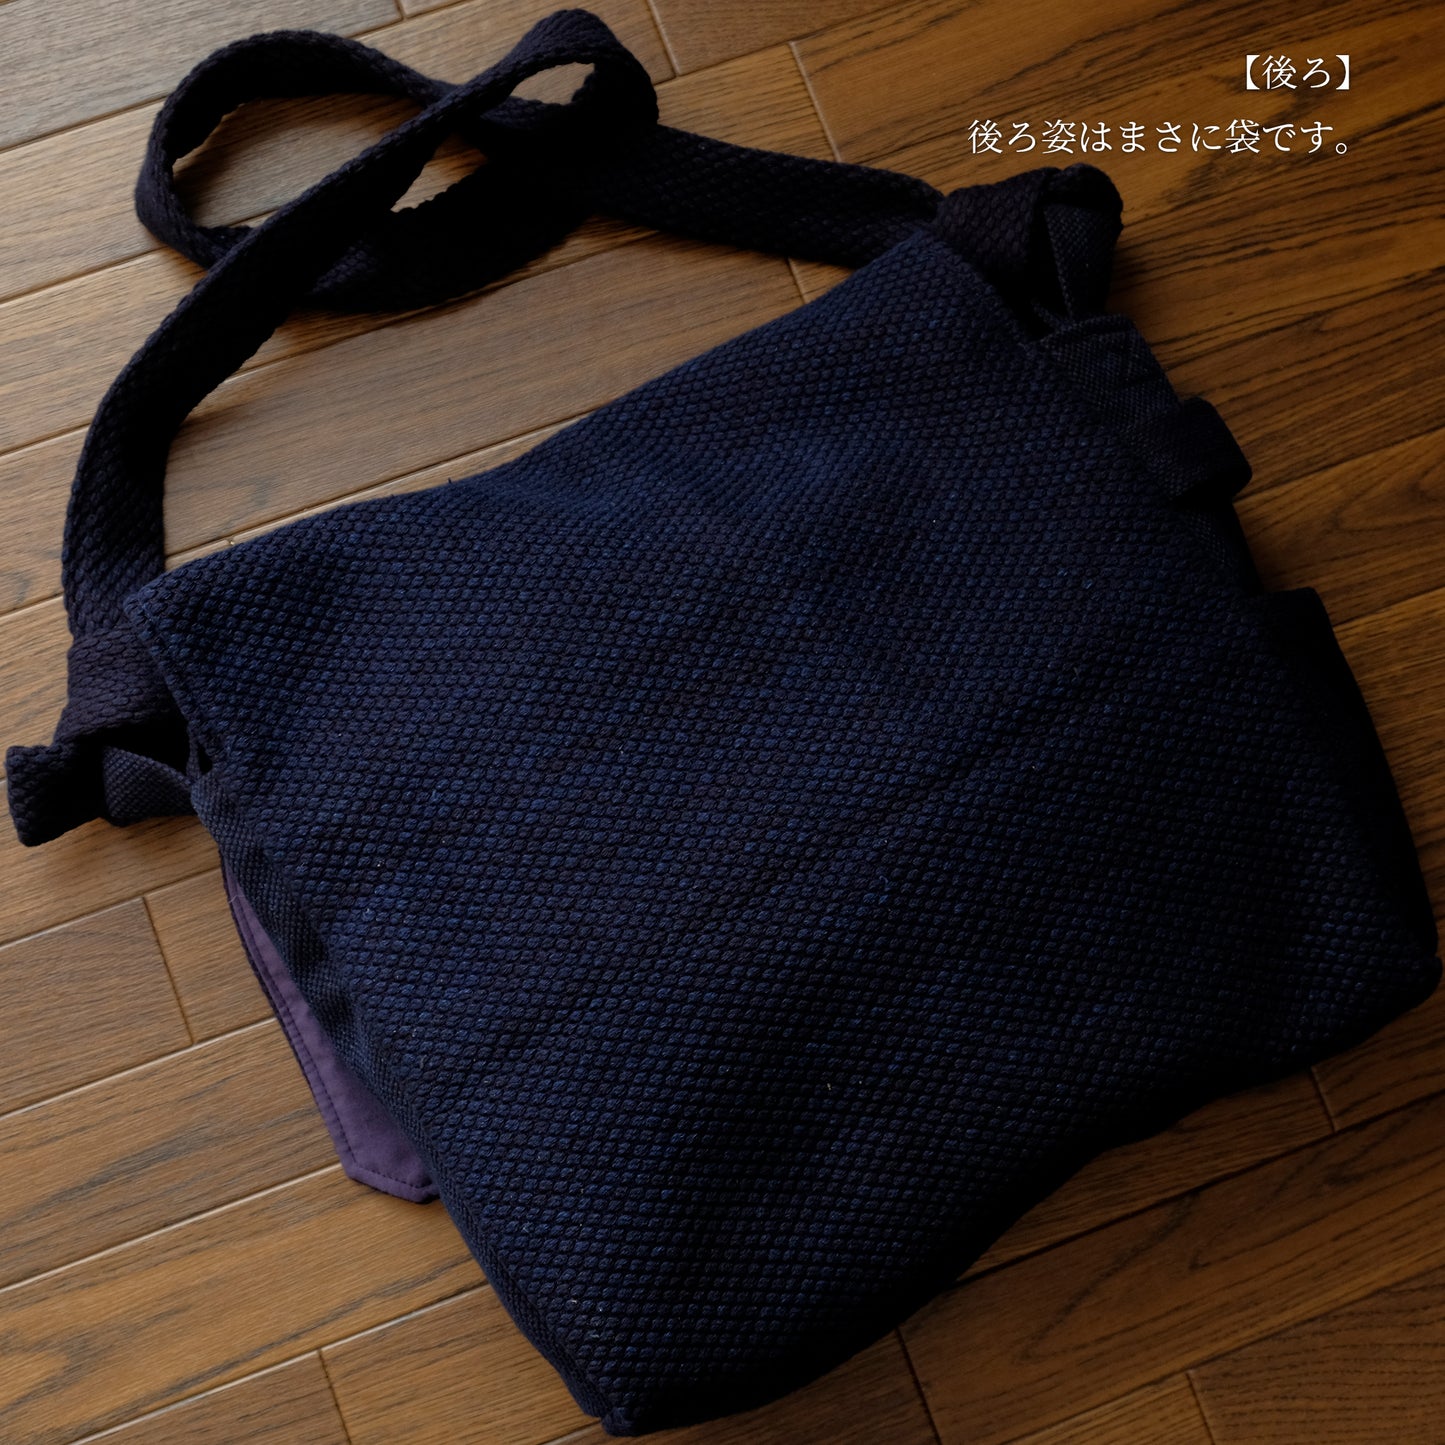 Headbach horizontal indigo -type indigo dyed (indigo) double stitch wash processed in Japan